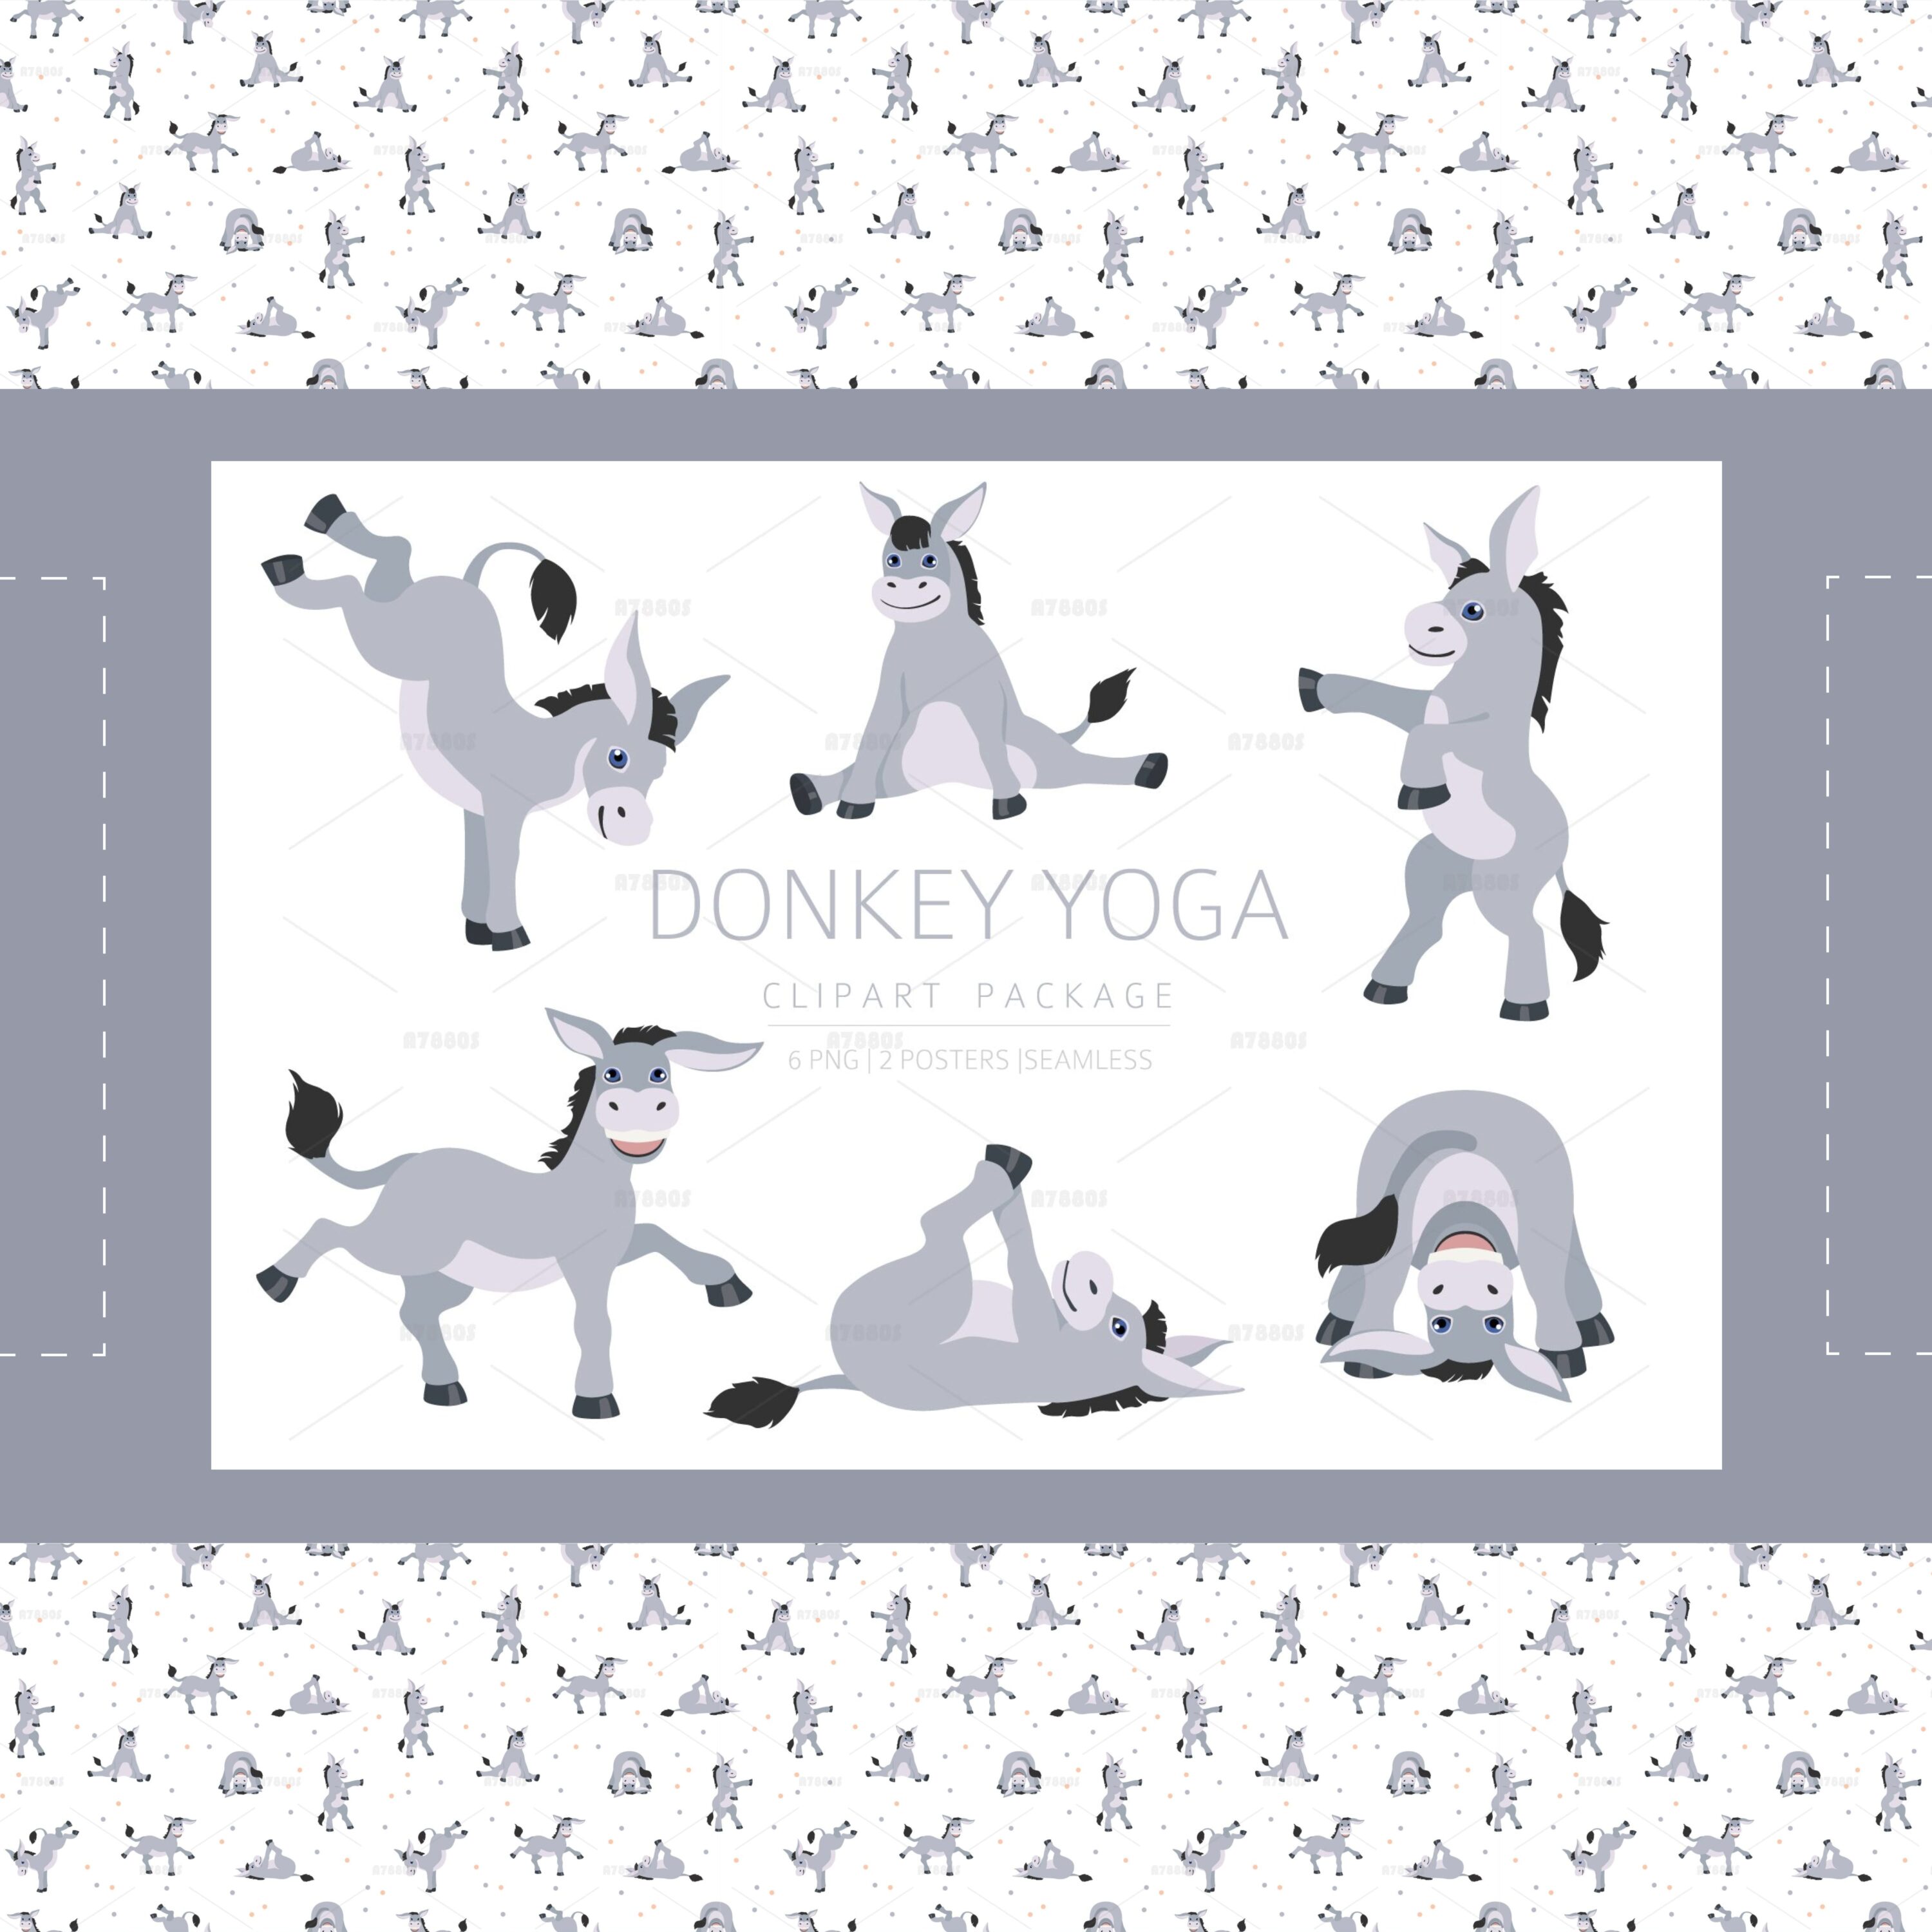 Donkey yoga cover.